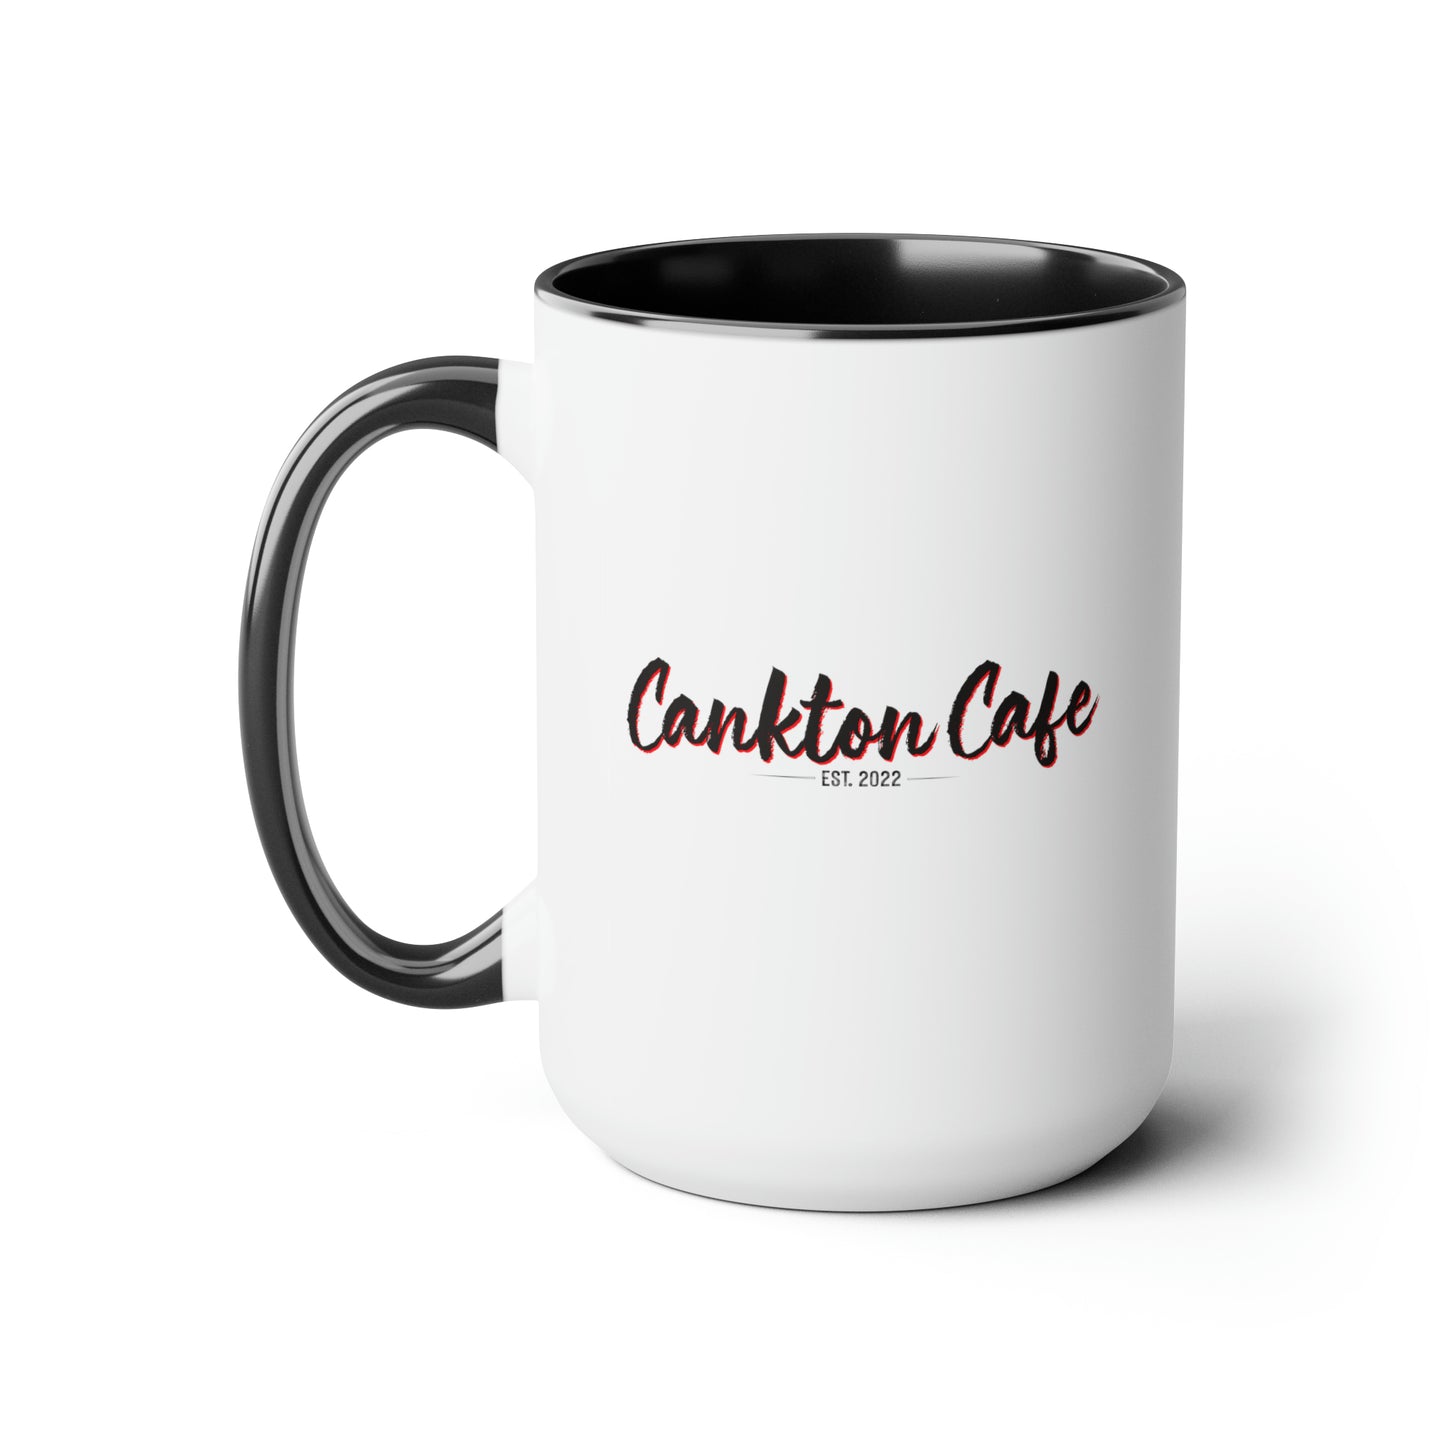 Cankton Cafe Two-Tone Coffee Mugs, 15oz